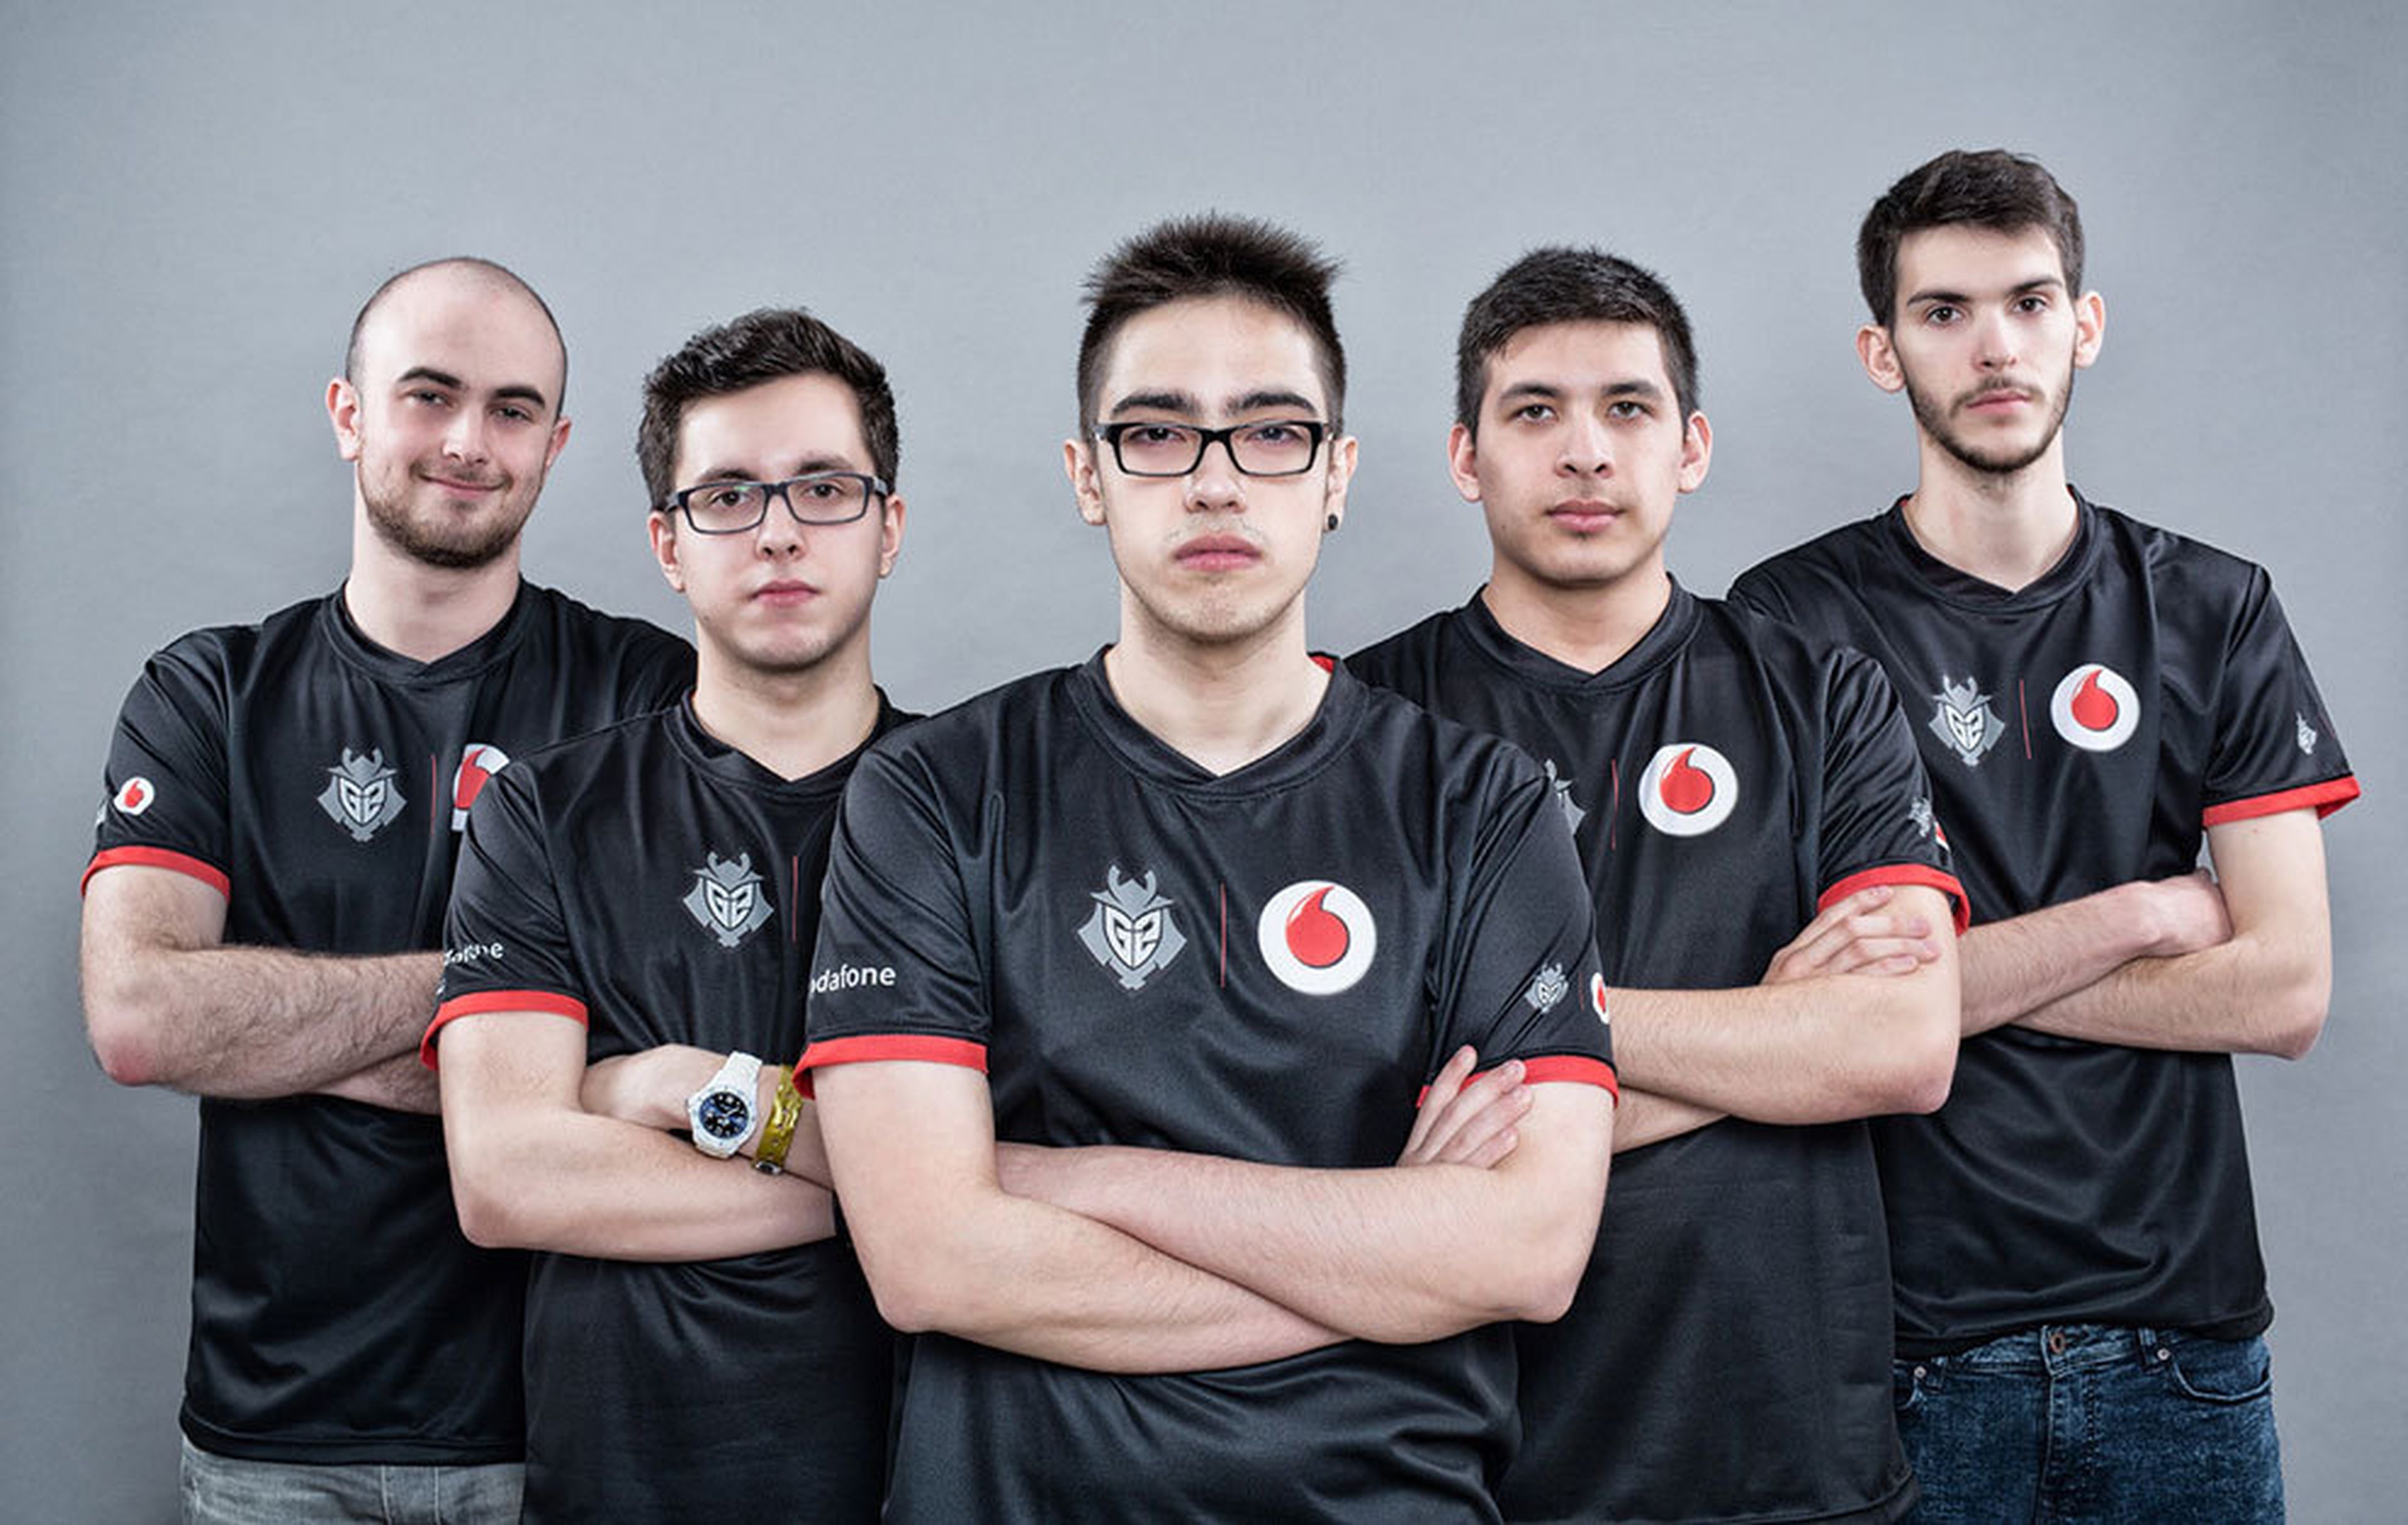 Foto oficial de los integrantes del equipo G2 | Vodafone creado por Ocelote.